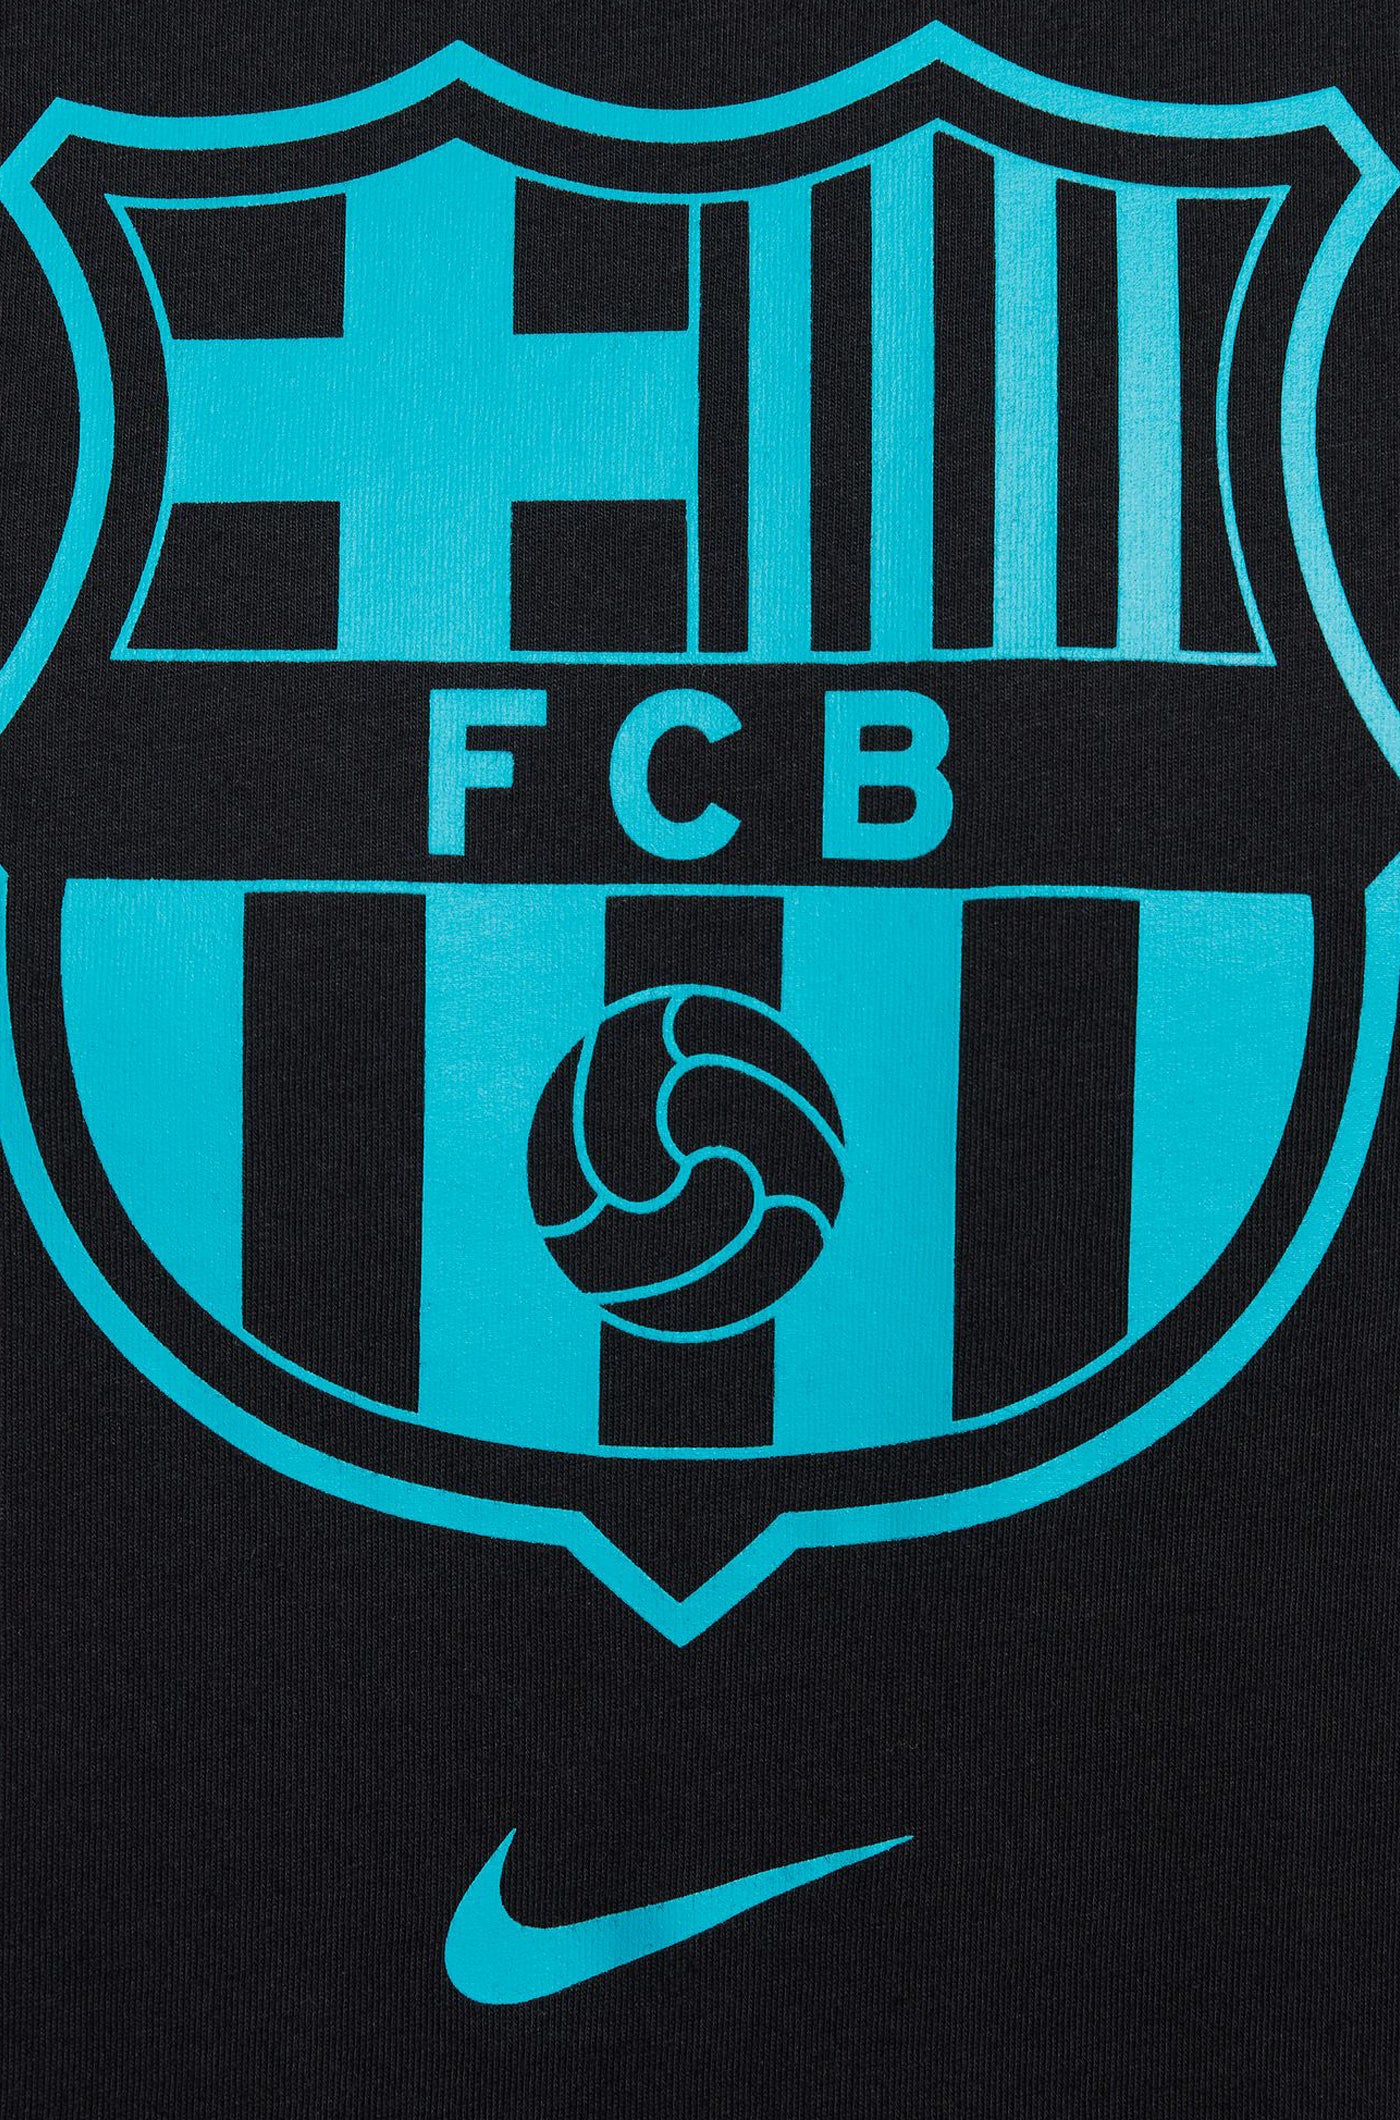  T-Shirt mit schwarzem Mannschaftswappen von Barça Nike